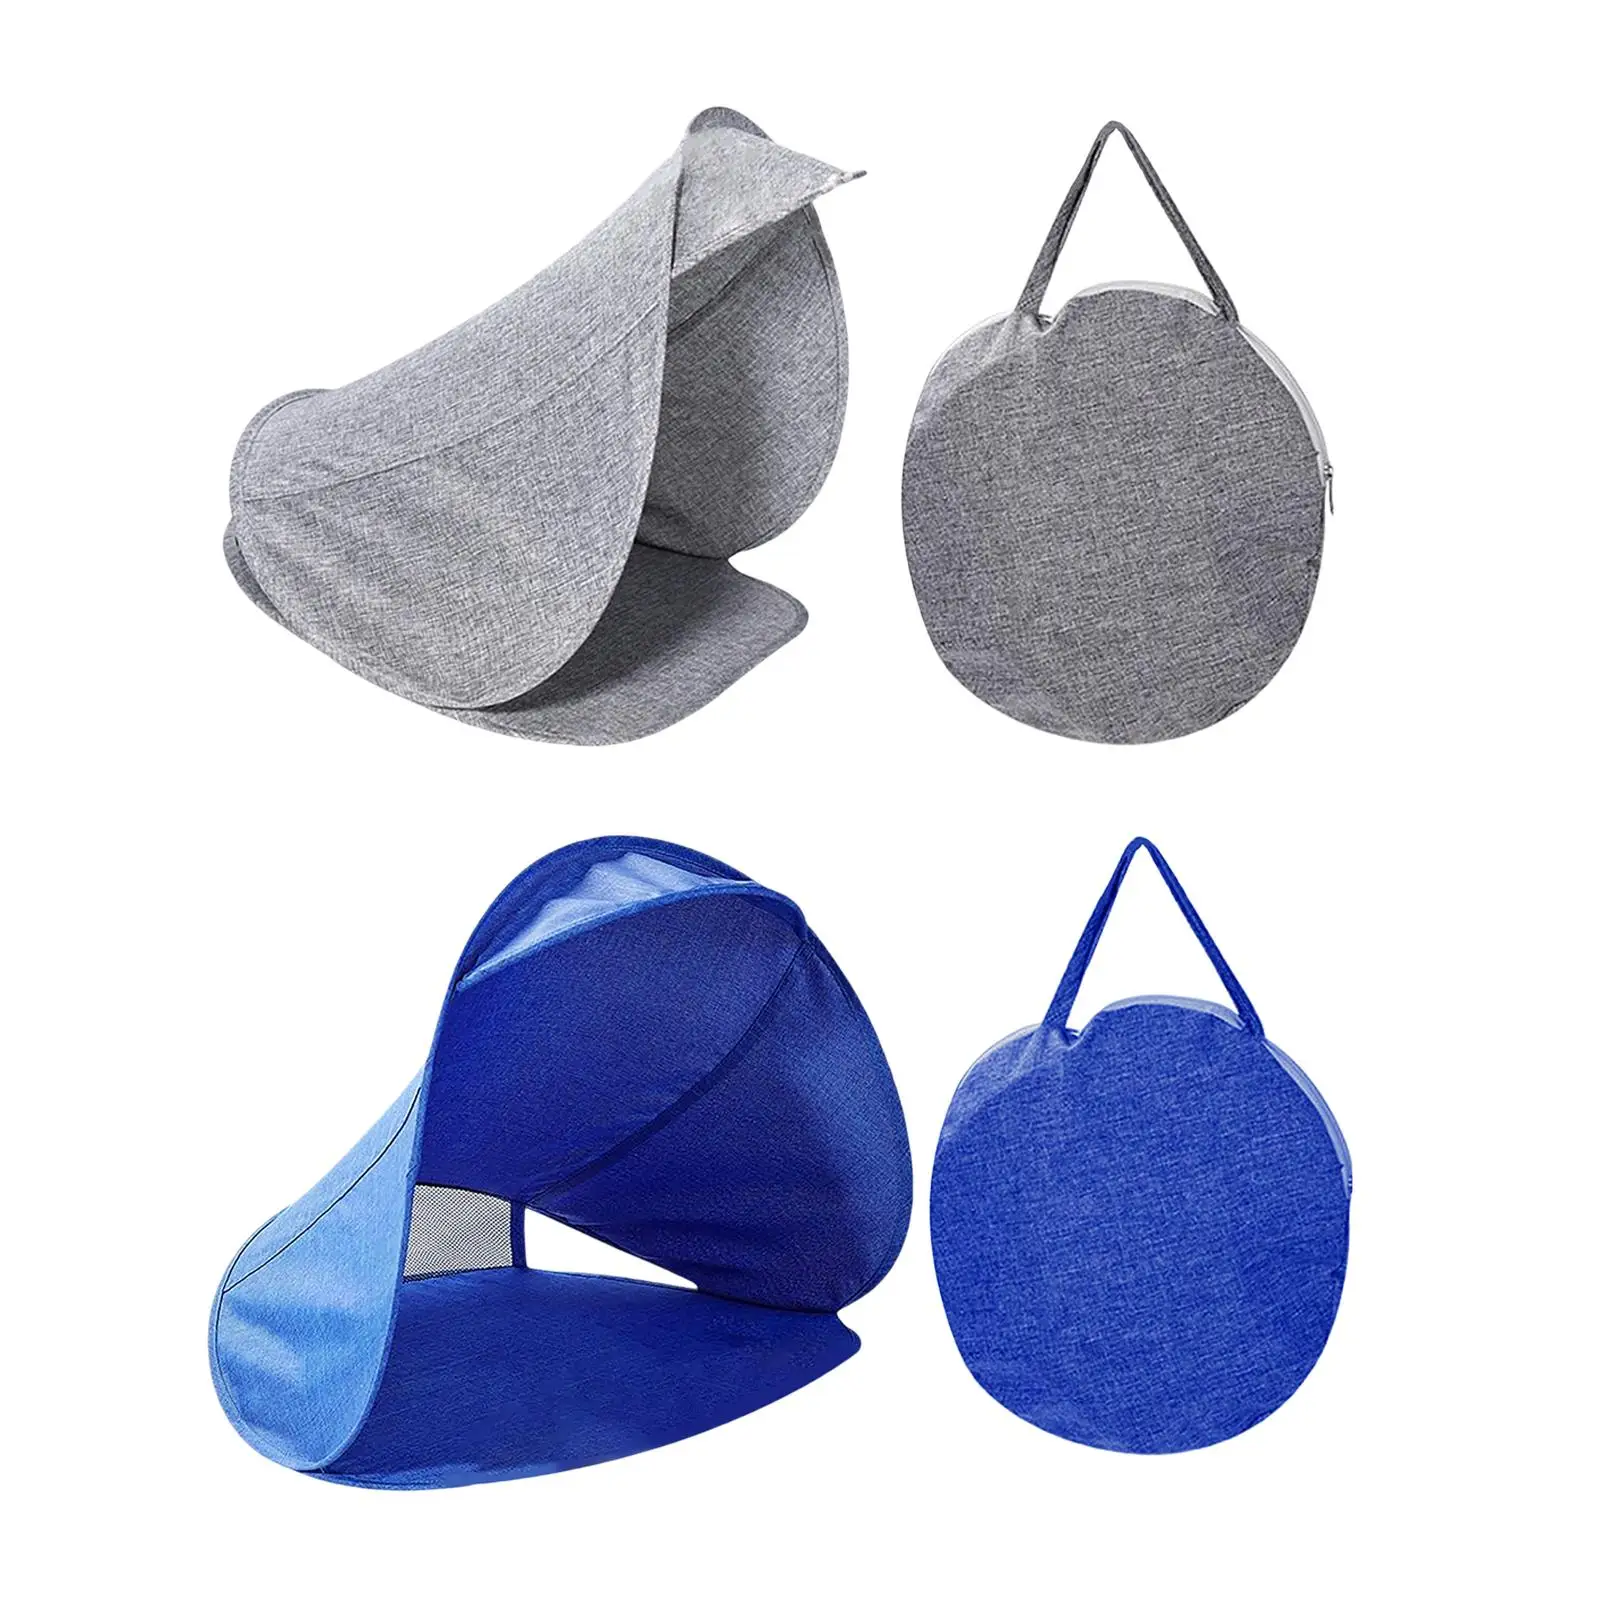 Sun Shelter Facial Umbrellas Breathable Head Tent for Outdoor Camping Picnic